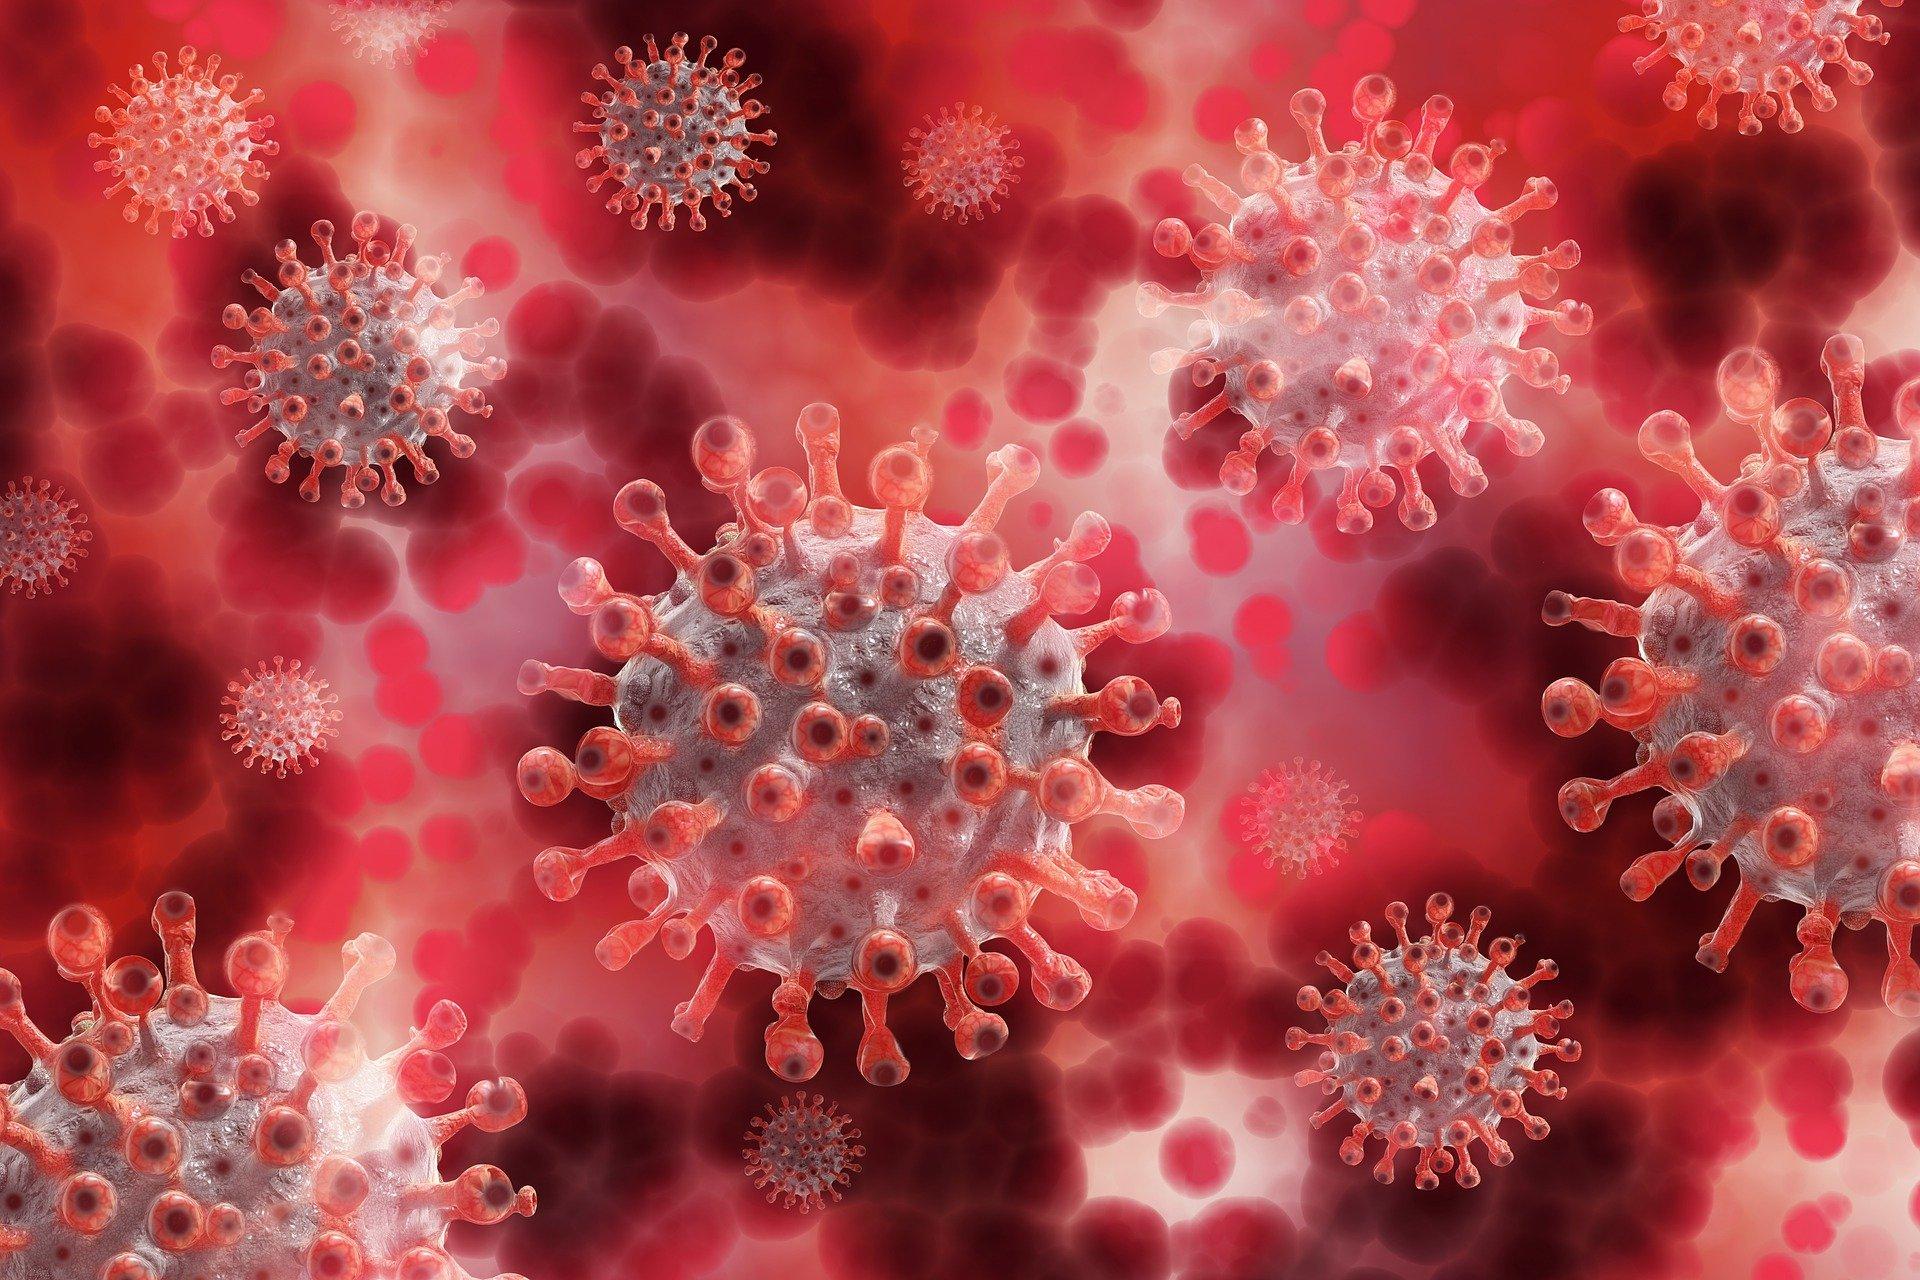 Coronavirus. Pixabay